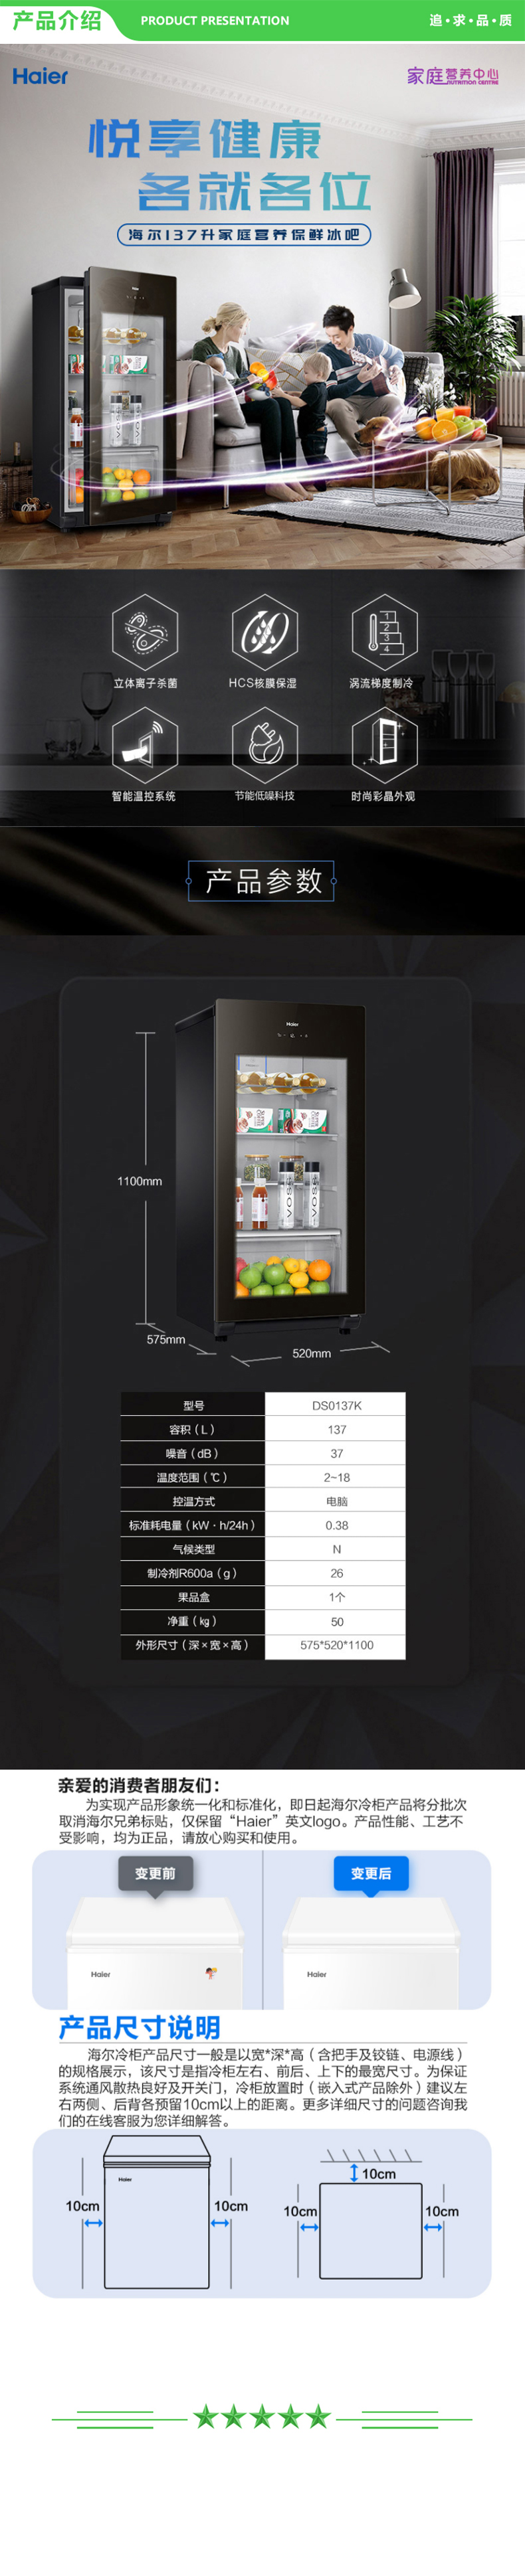 海尔 Haier DS0157DK  157升智能双温可制冰家用客厅办公室暖藏冰吧 茶叶饮料水果冷藏保鲜柜小型冰箱 .jpg